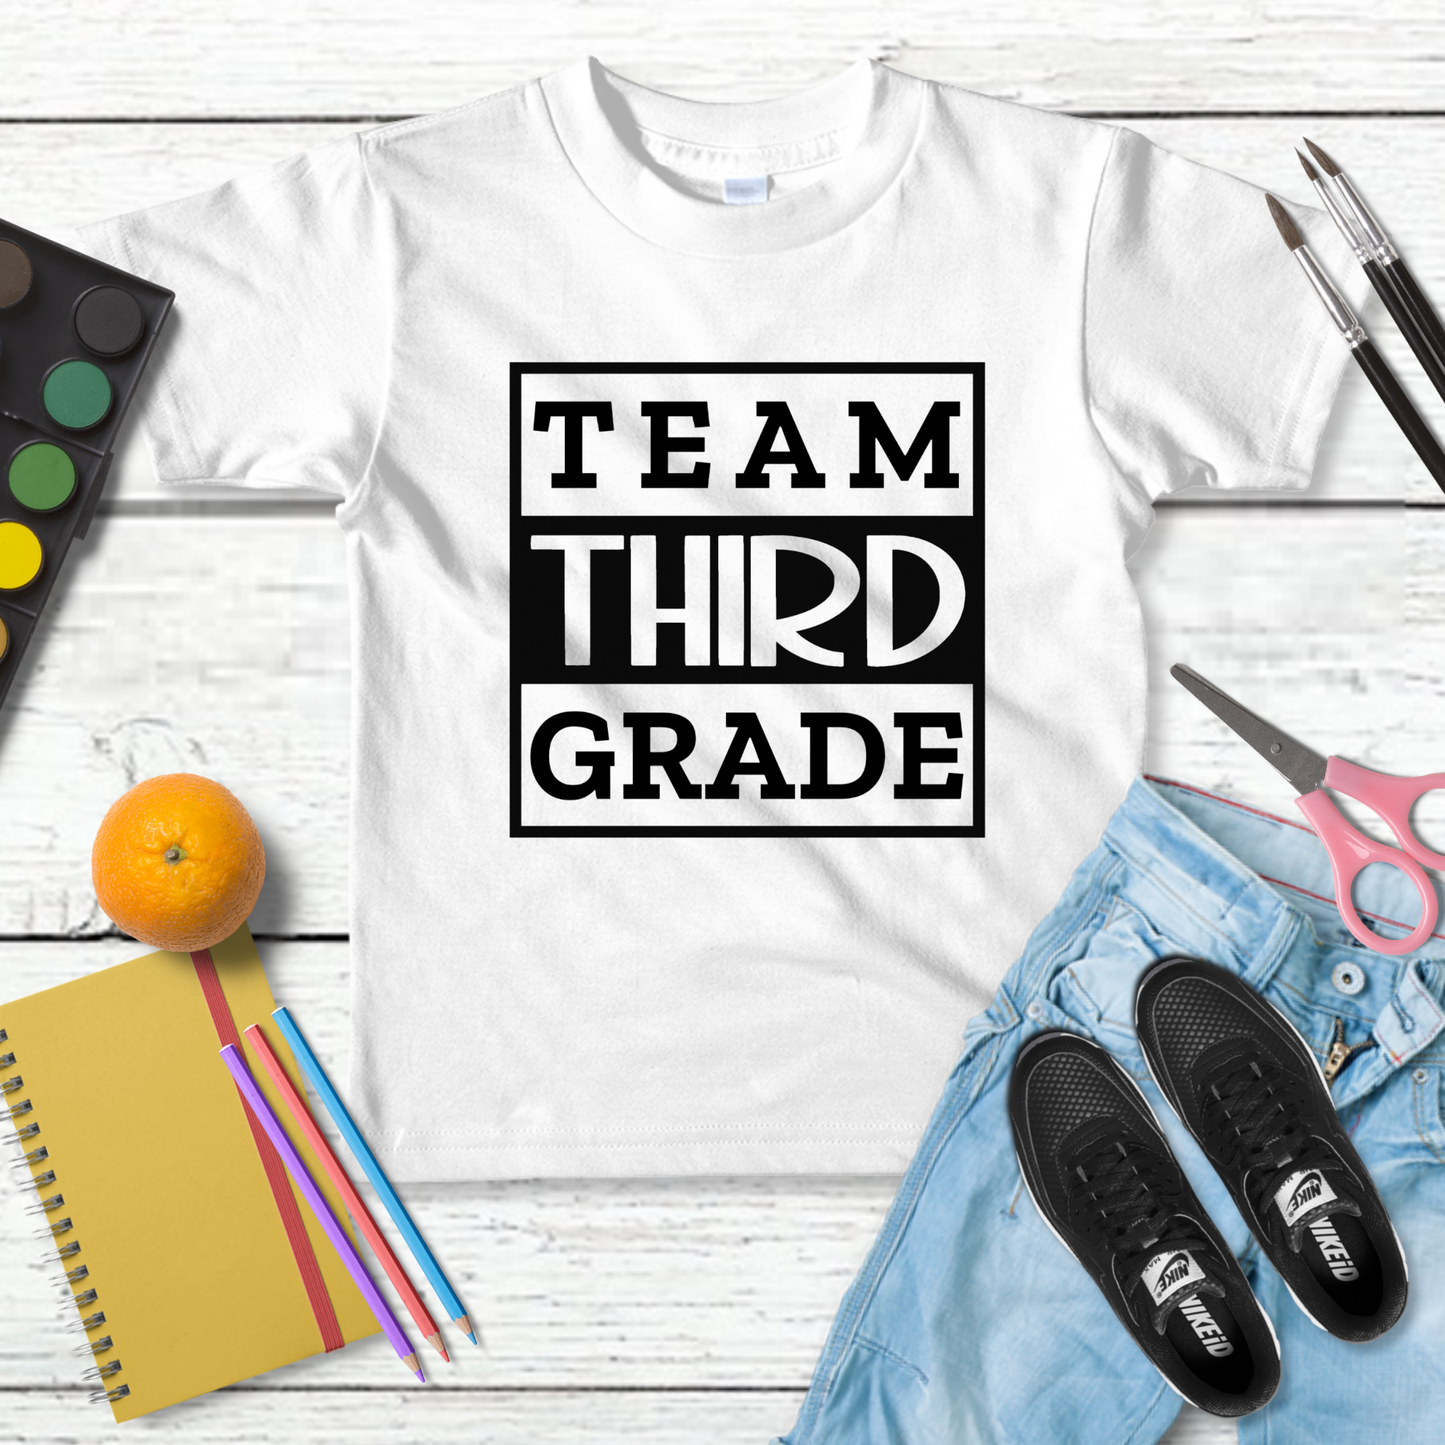 Team Third Grade Adult Cotton T-shirt